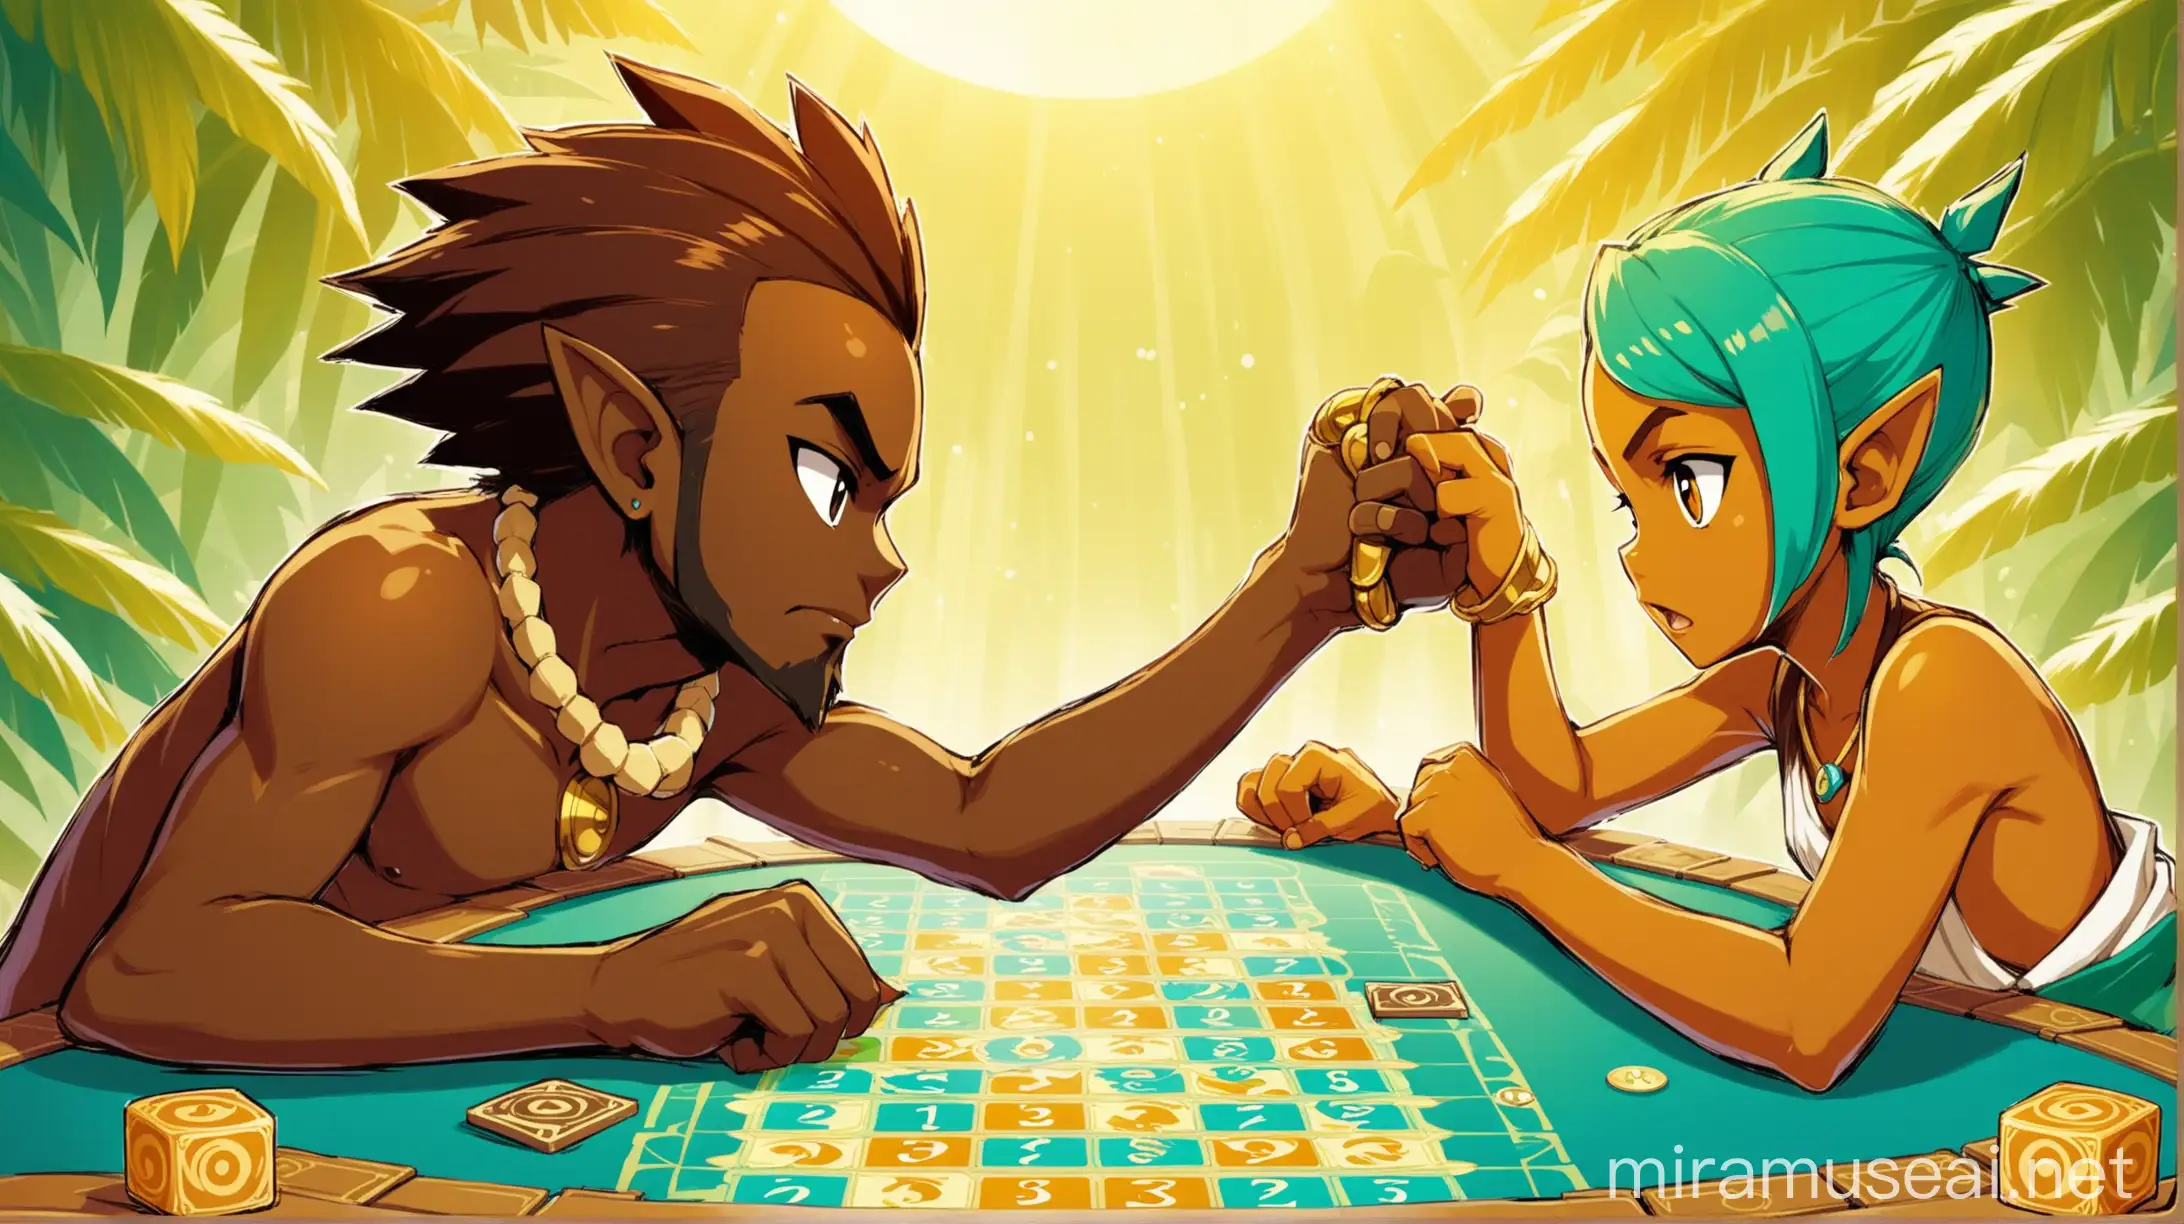 2 personnages face à face qui s'opposent près à s'affronter sur un jeu de plateau (on ne dois pas voir le jeu) en duel. Ce sont des jeunes adultes mélanésiens. On ne vois que les deux personnages en plan centré sur eux. L'illustration est de style wakfu.